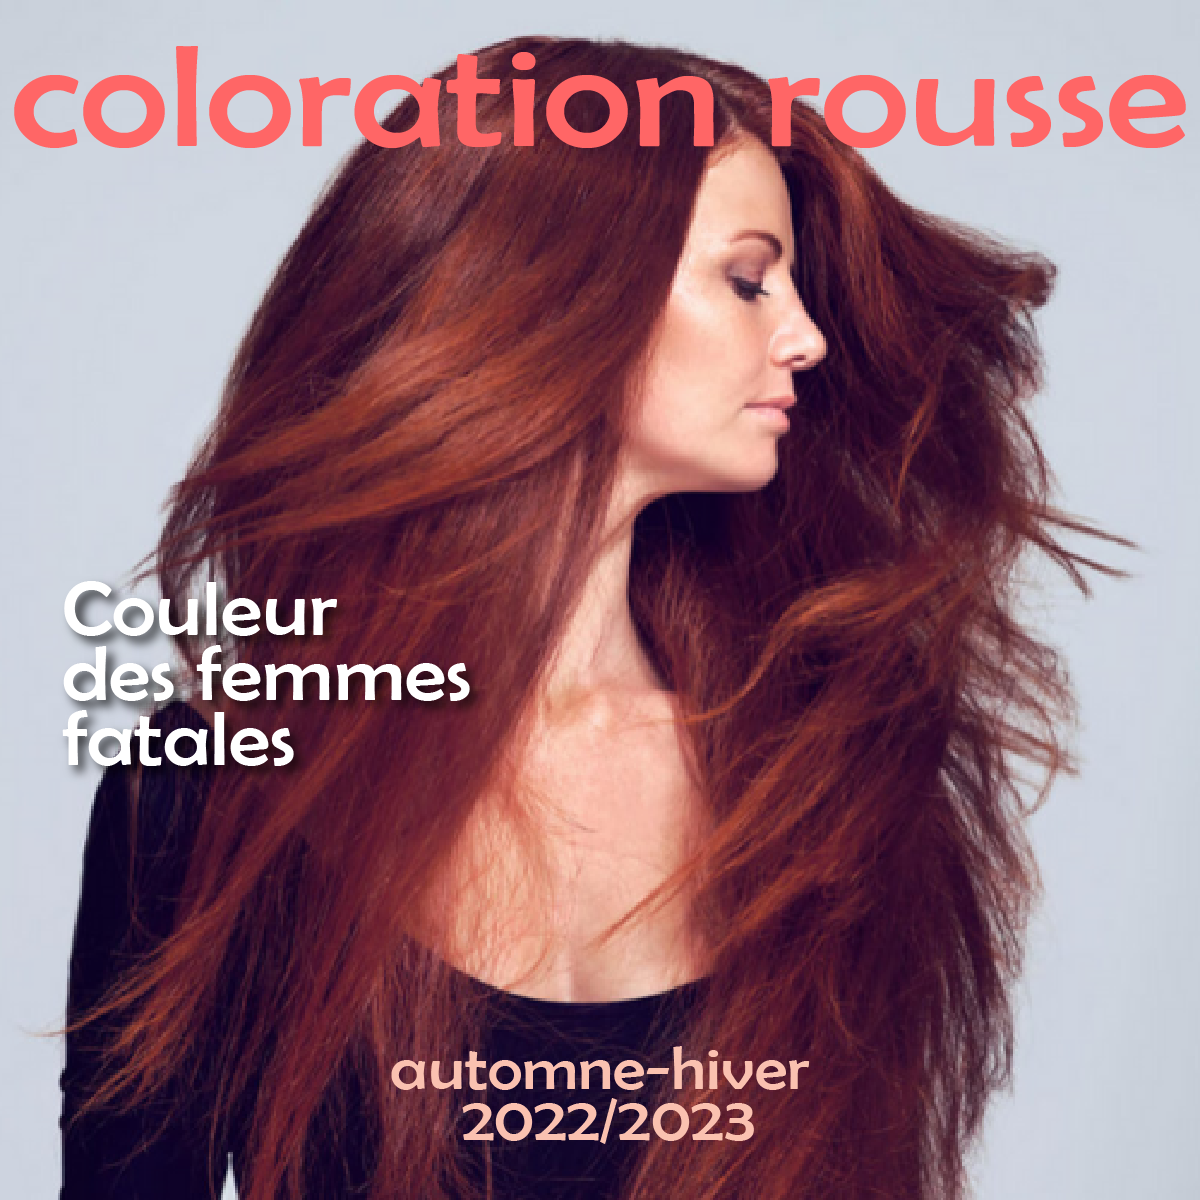 Cheveux roux Les meilleures nuances de coloration rousse de cet automne-hiver 2022 2023